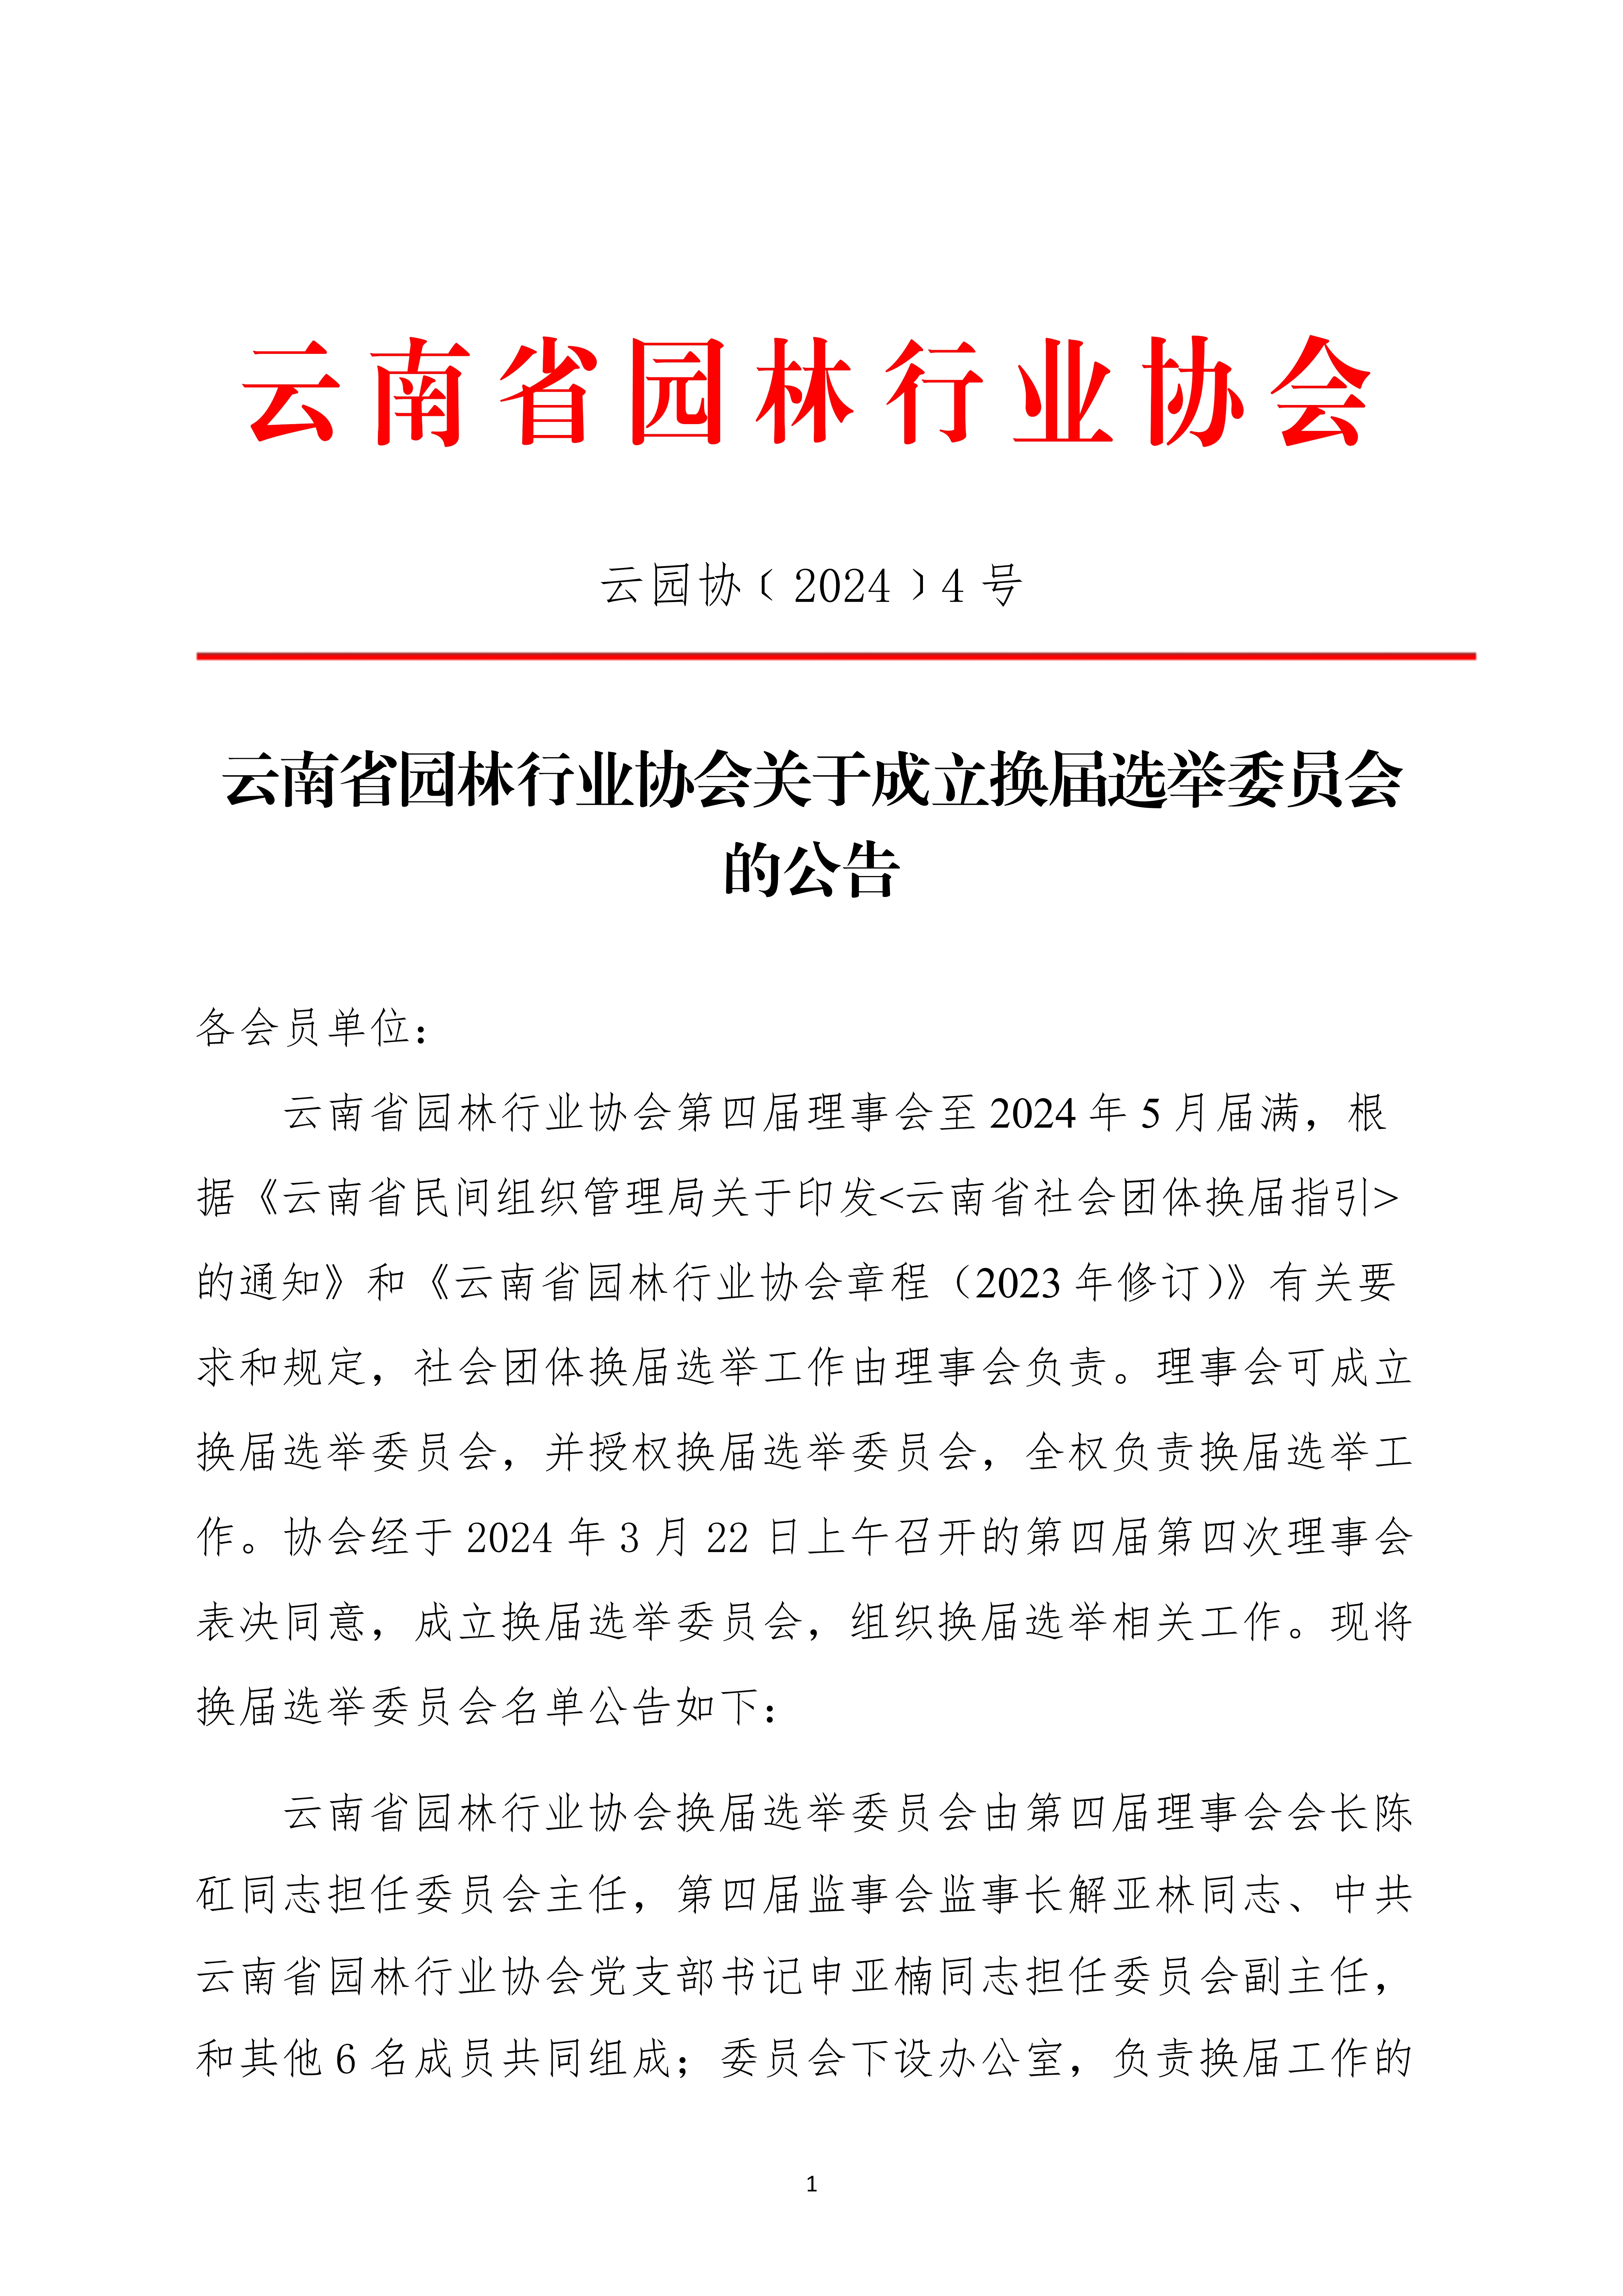 4九州官方网站(中国)有限公司官网关于成立换届选举委员会的公告(1)_1.jpg